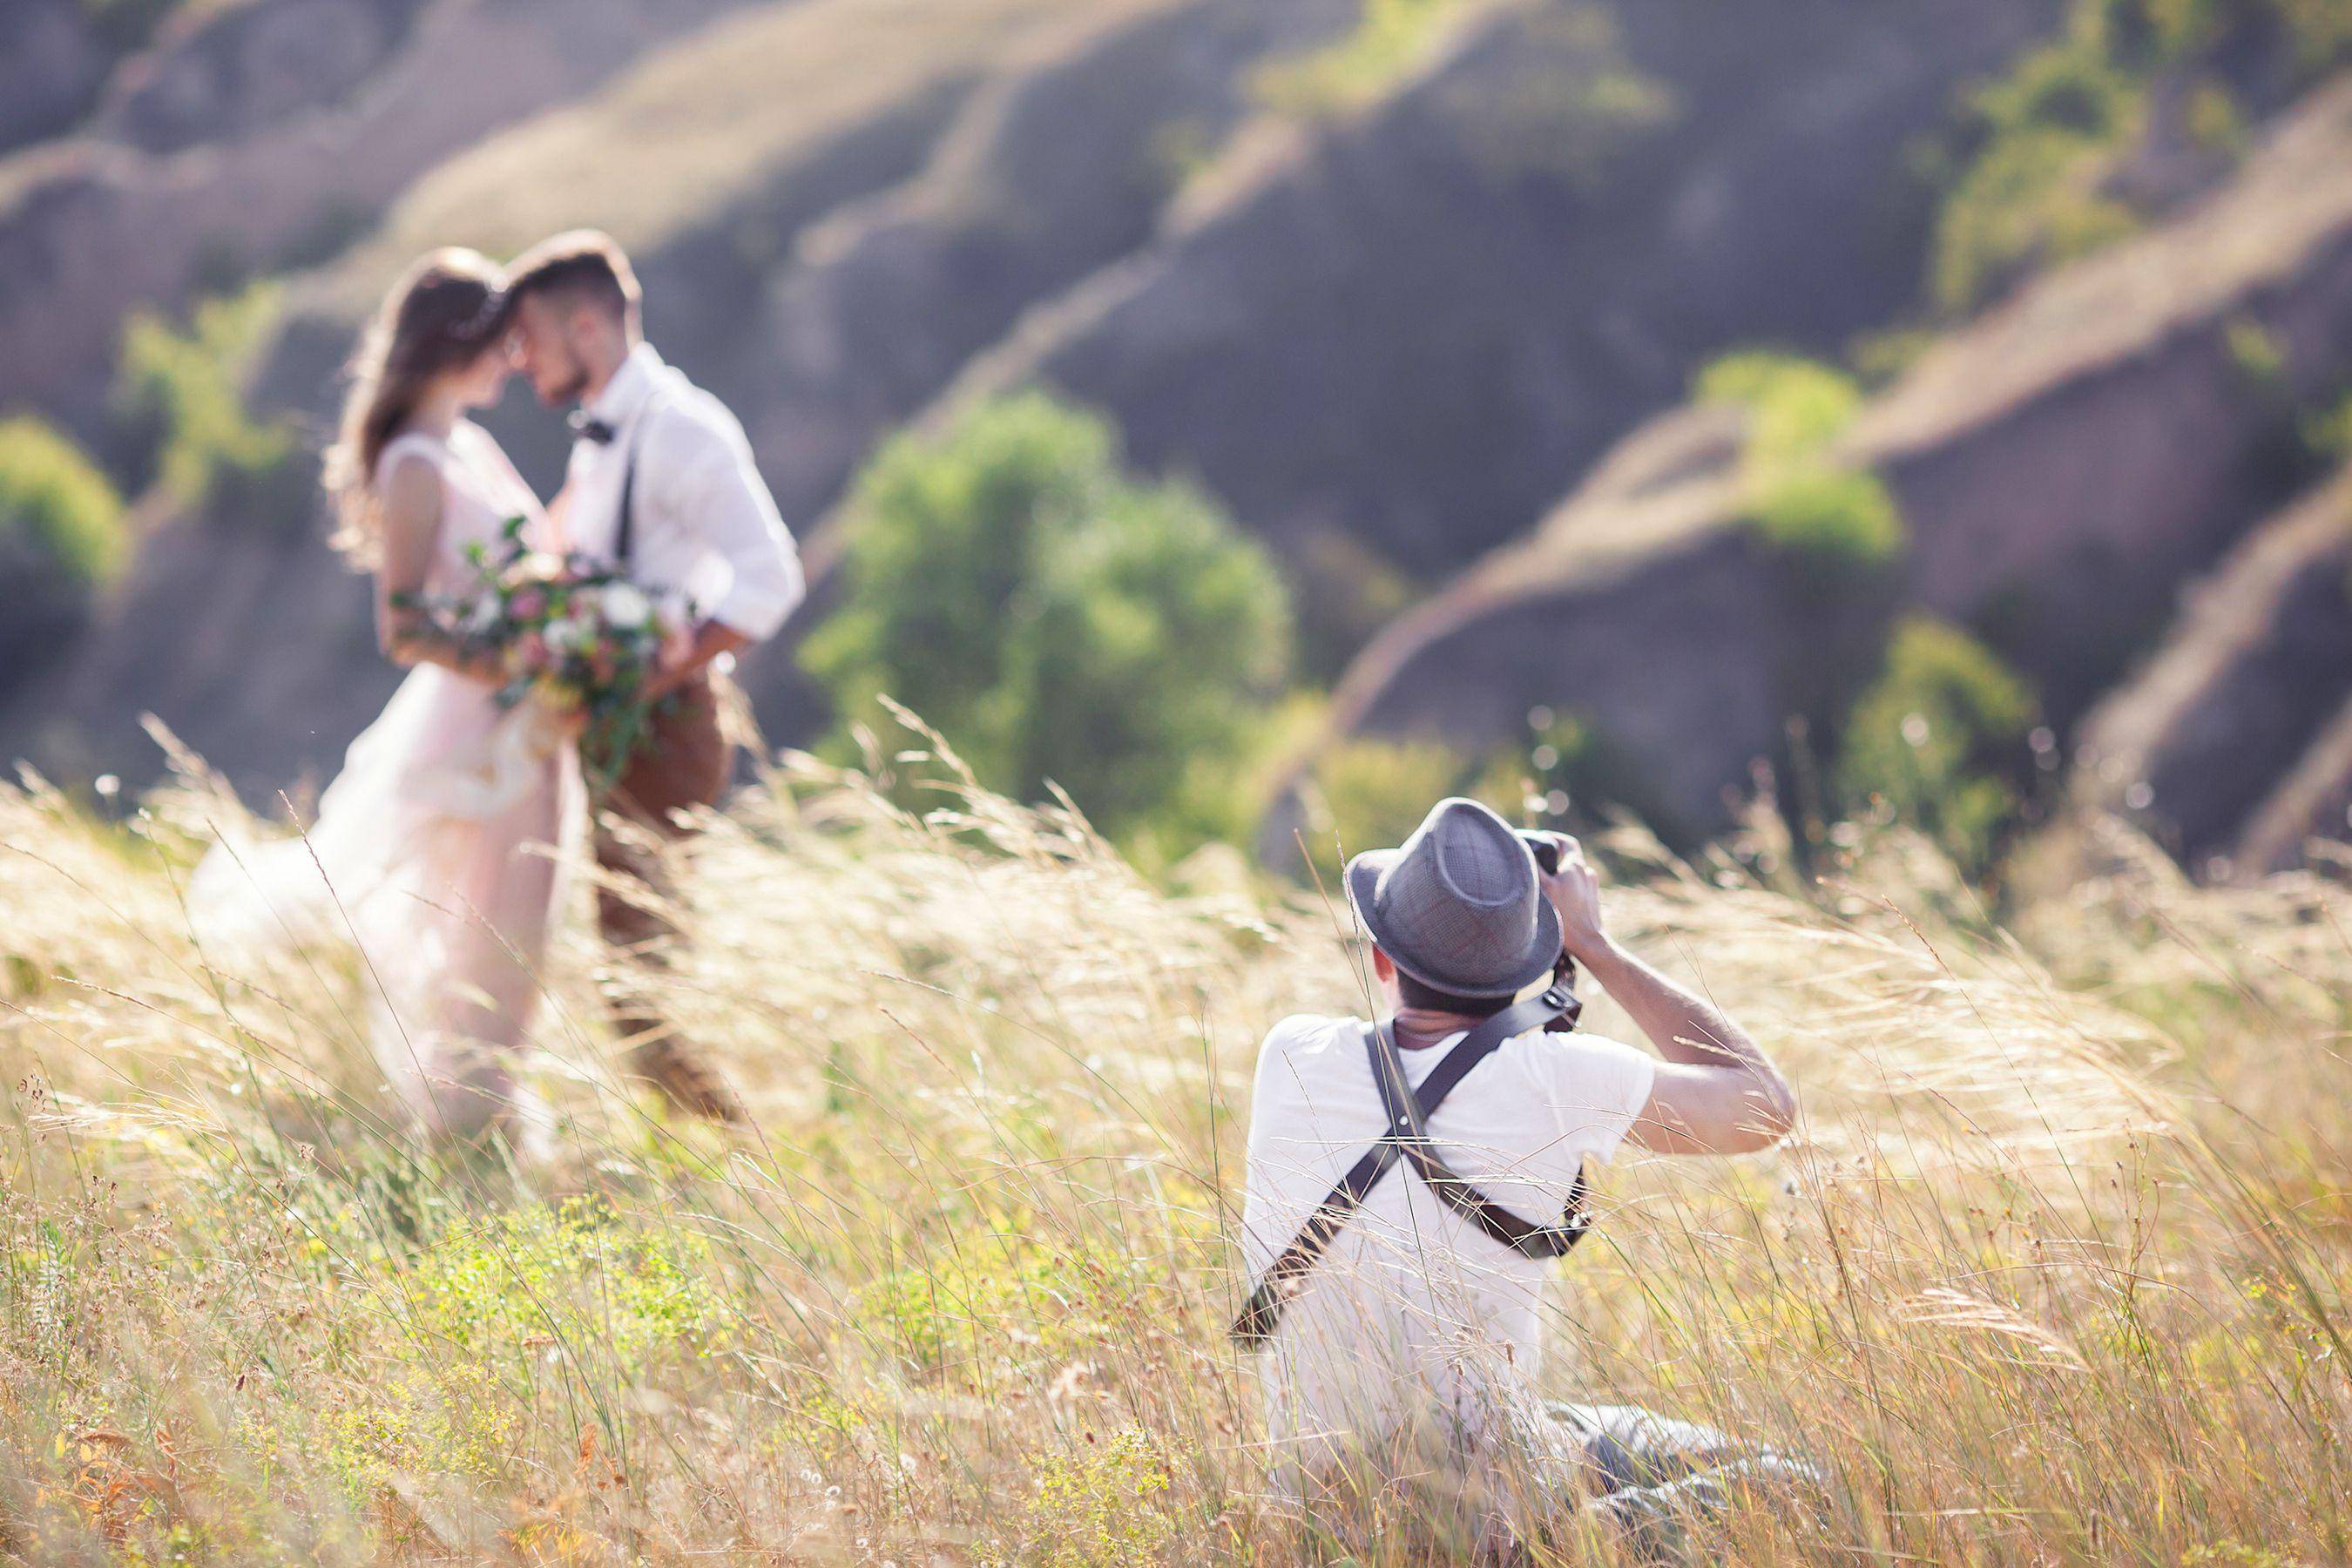 Свадебный фотограф, как выбрать? советы для молодожен